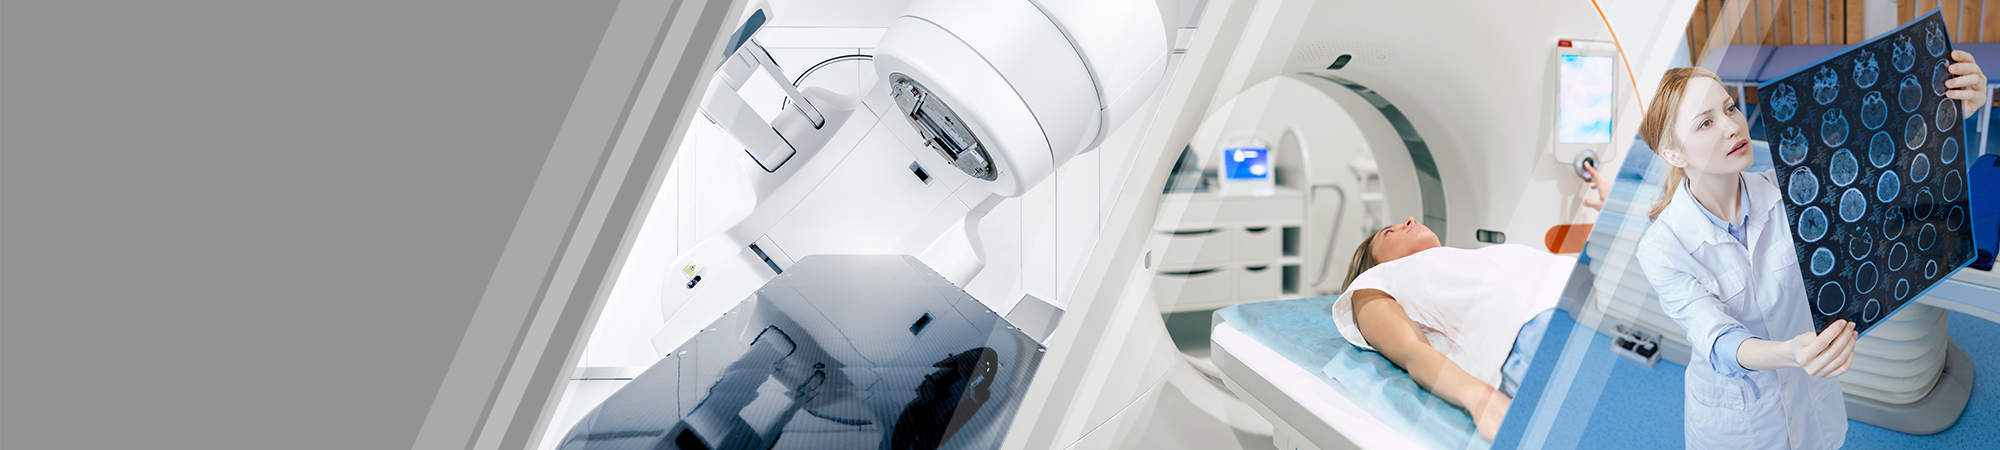 Рентгеновское оборудование, томографы